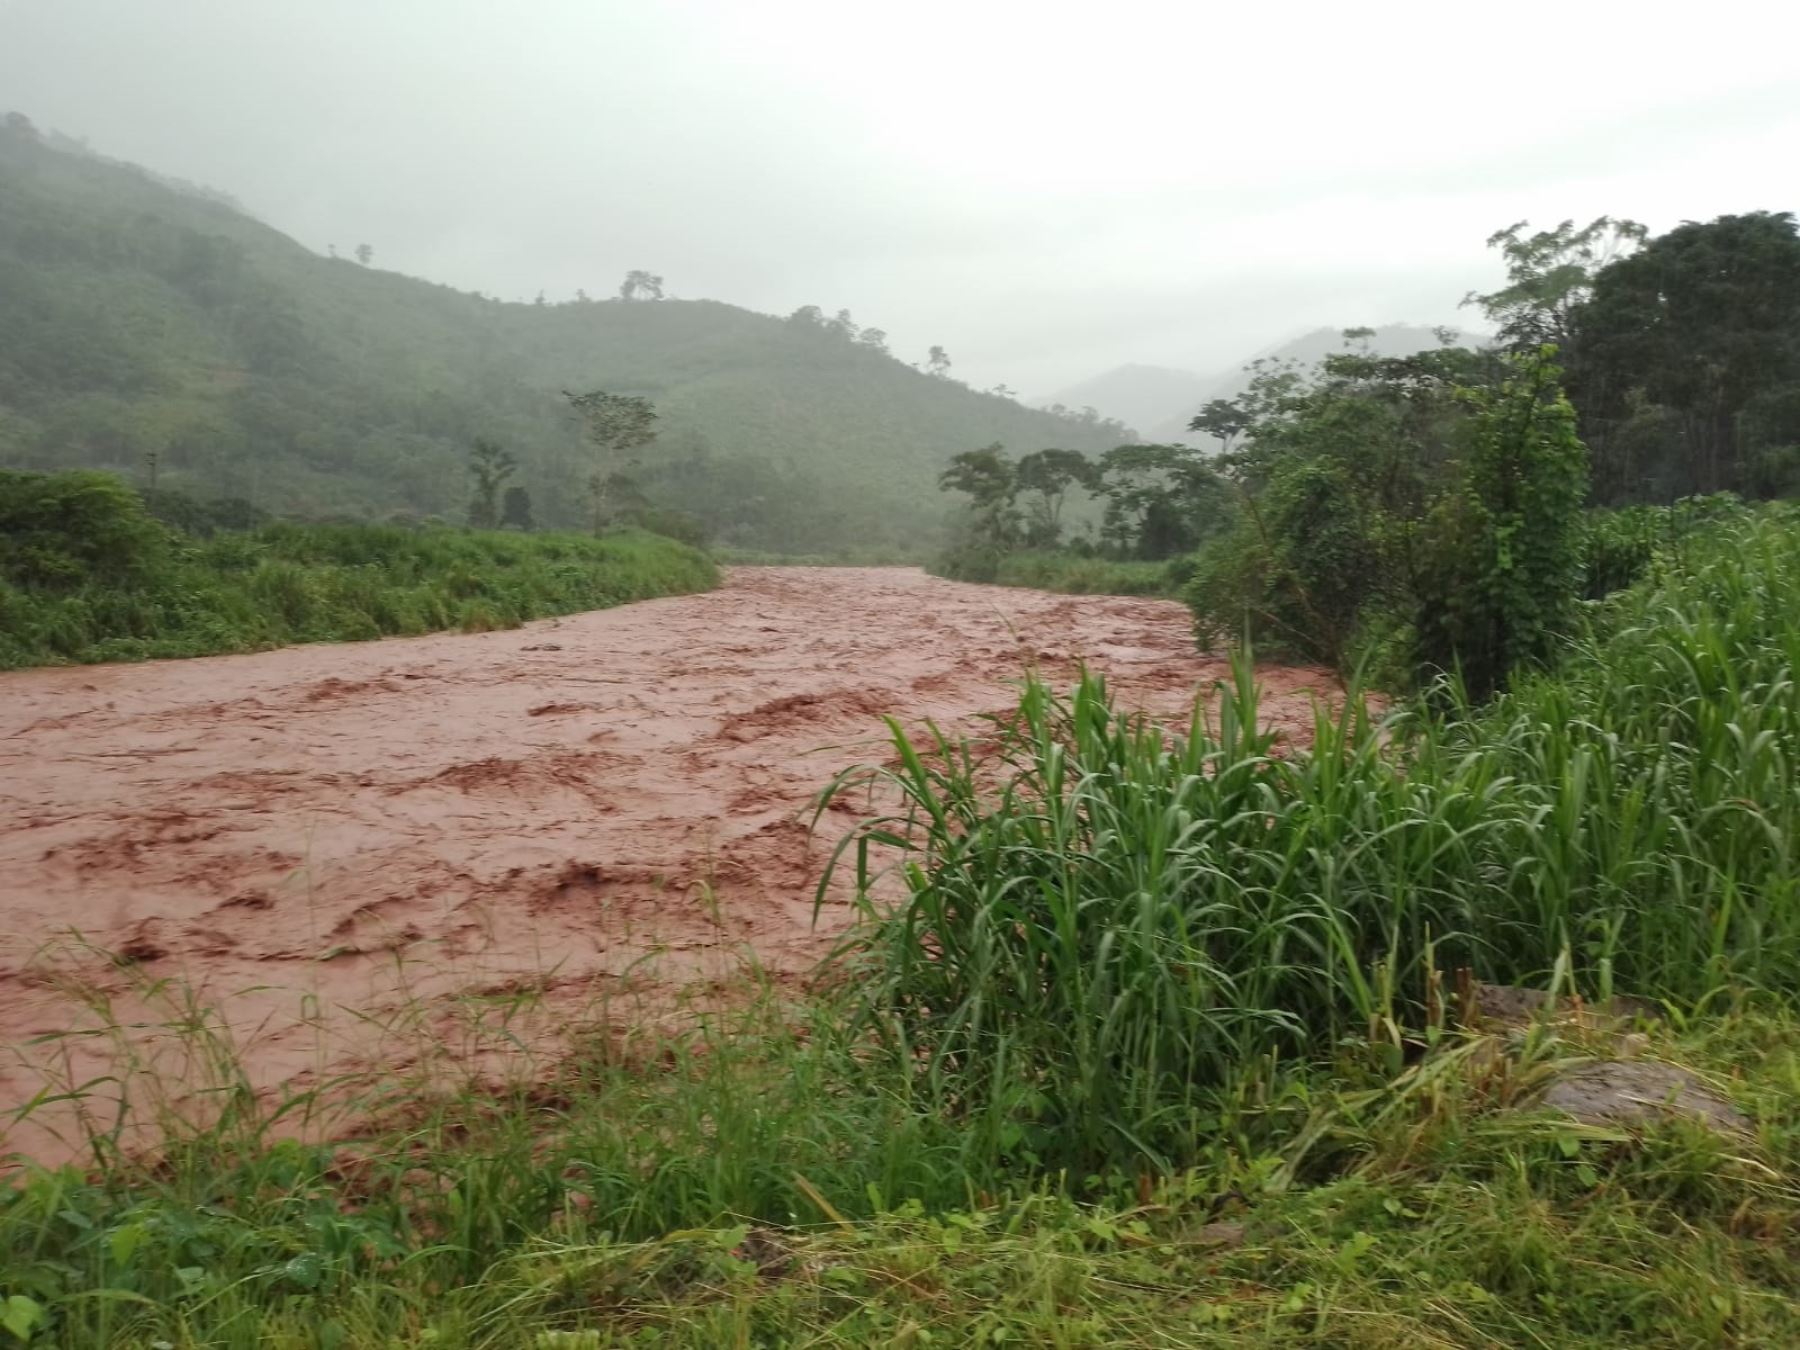 Las lluvias intensas que se registran en la selva de Junín han provocado el aumento del caudal de los ríos afectando la infraestructura vial de diversas carreteras de Satipo y Chanchamayo.